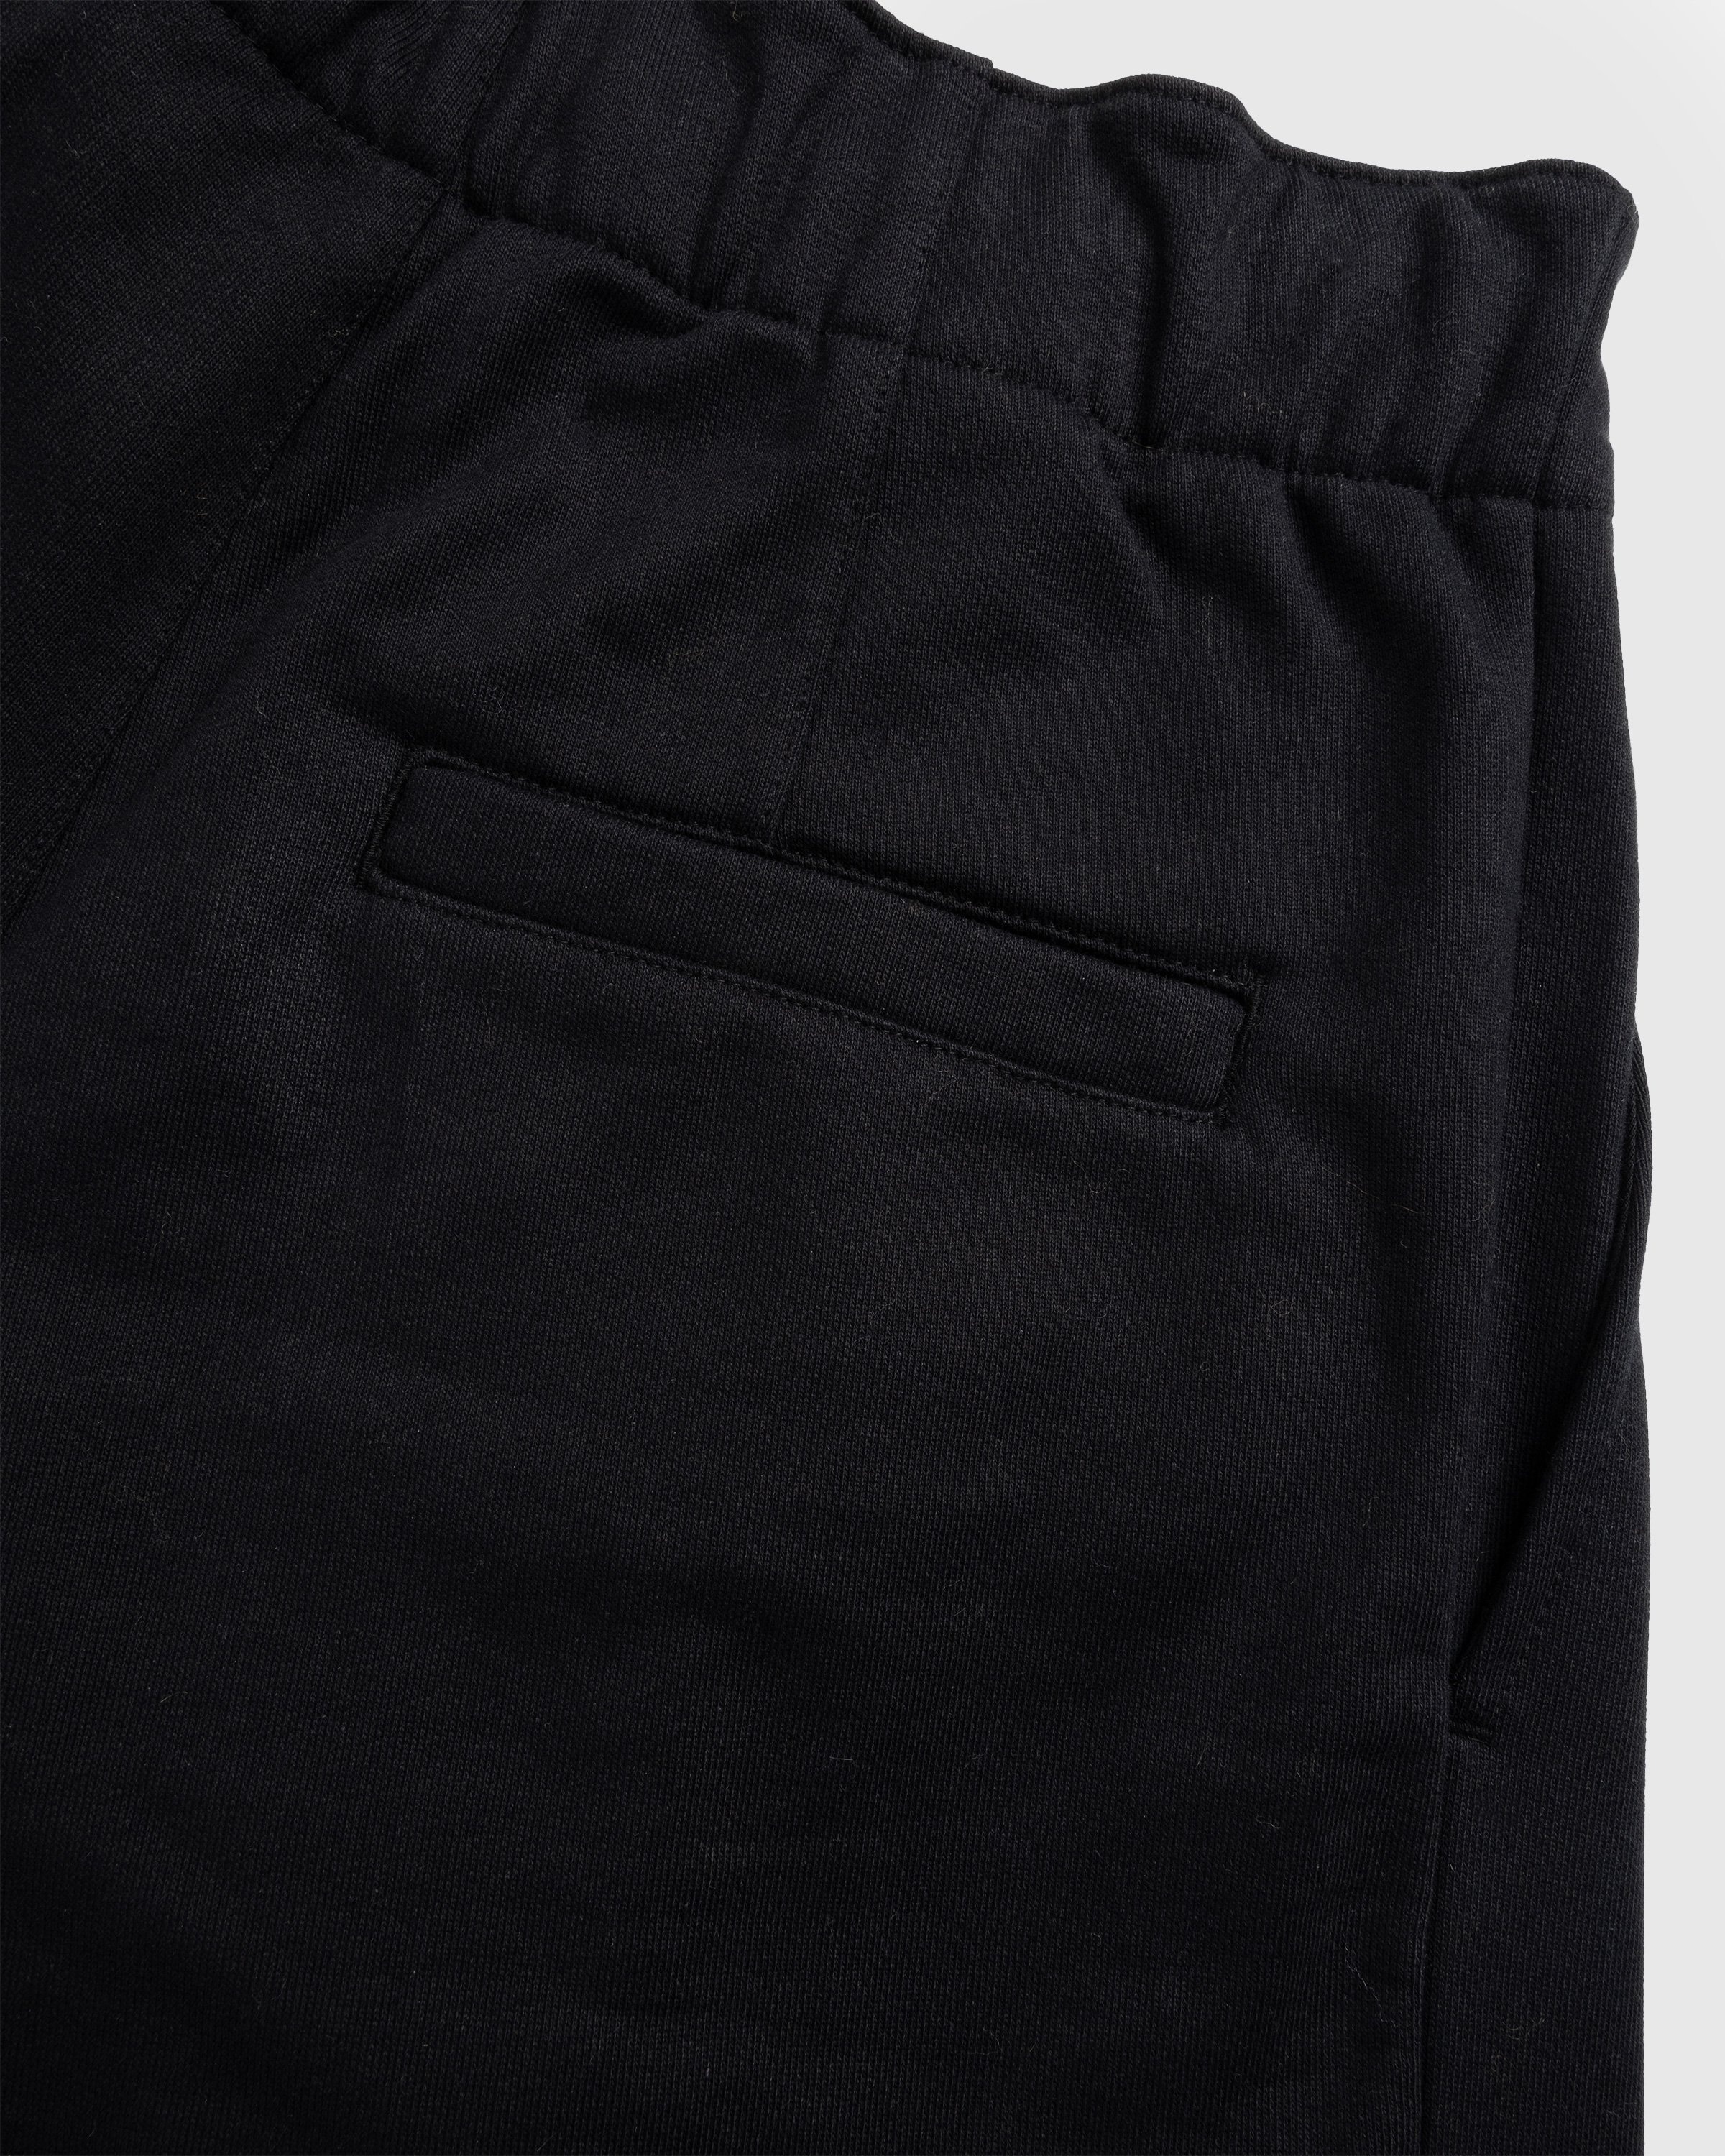 Dries van Noten – Hama Cotton Jersey Pants Black - Tops - Black - Image 5